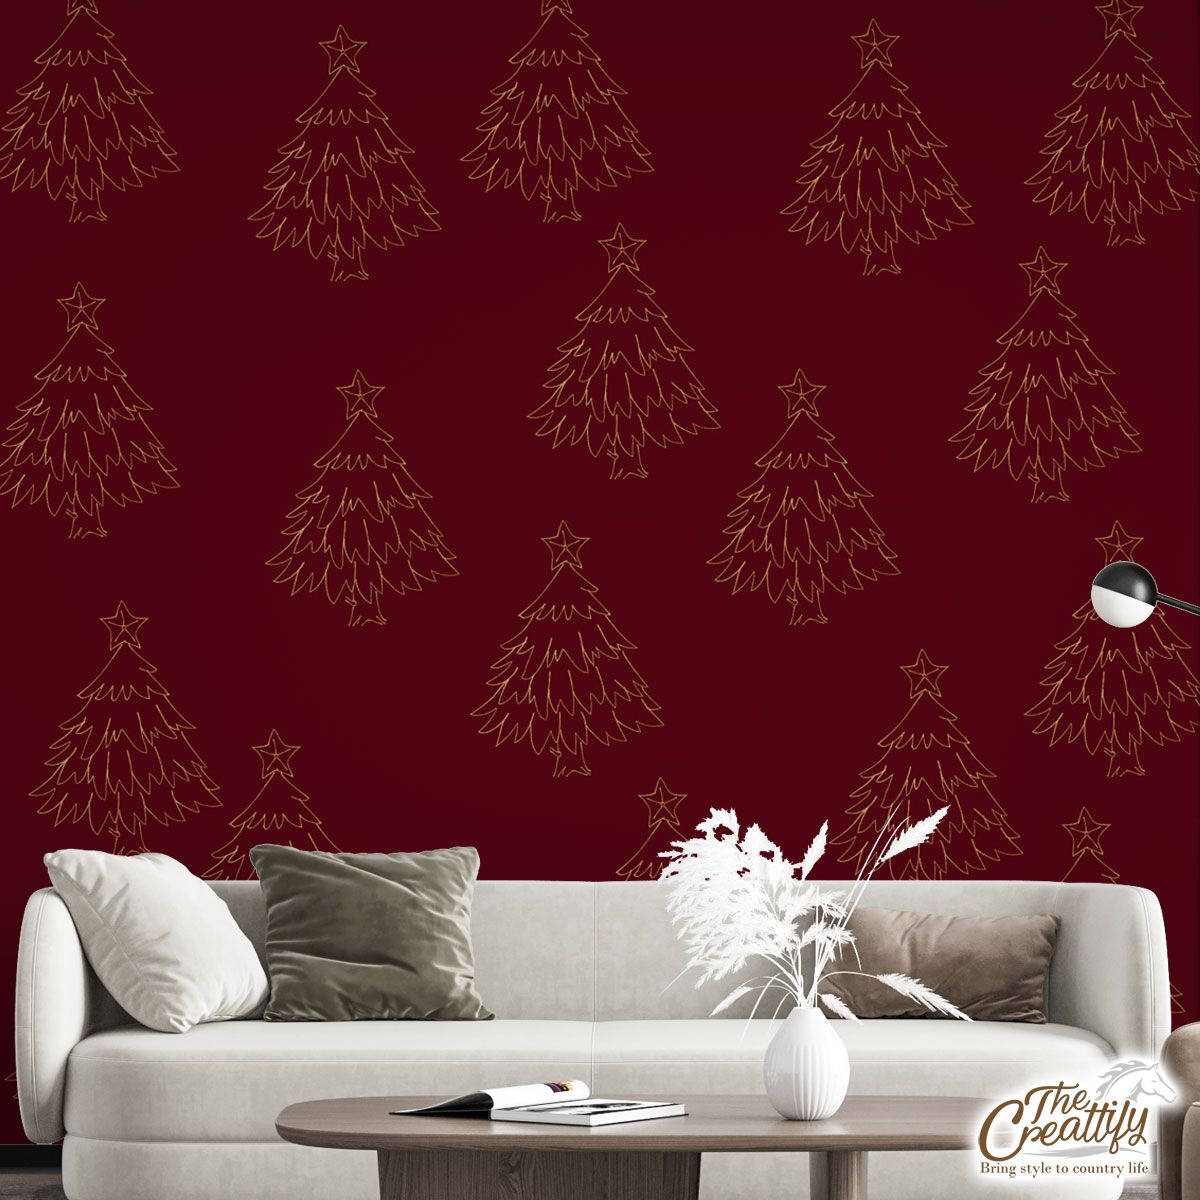 Christmas Tree, Pine Tree, Christmas Plants Wall Mural